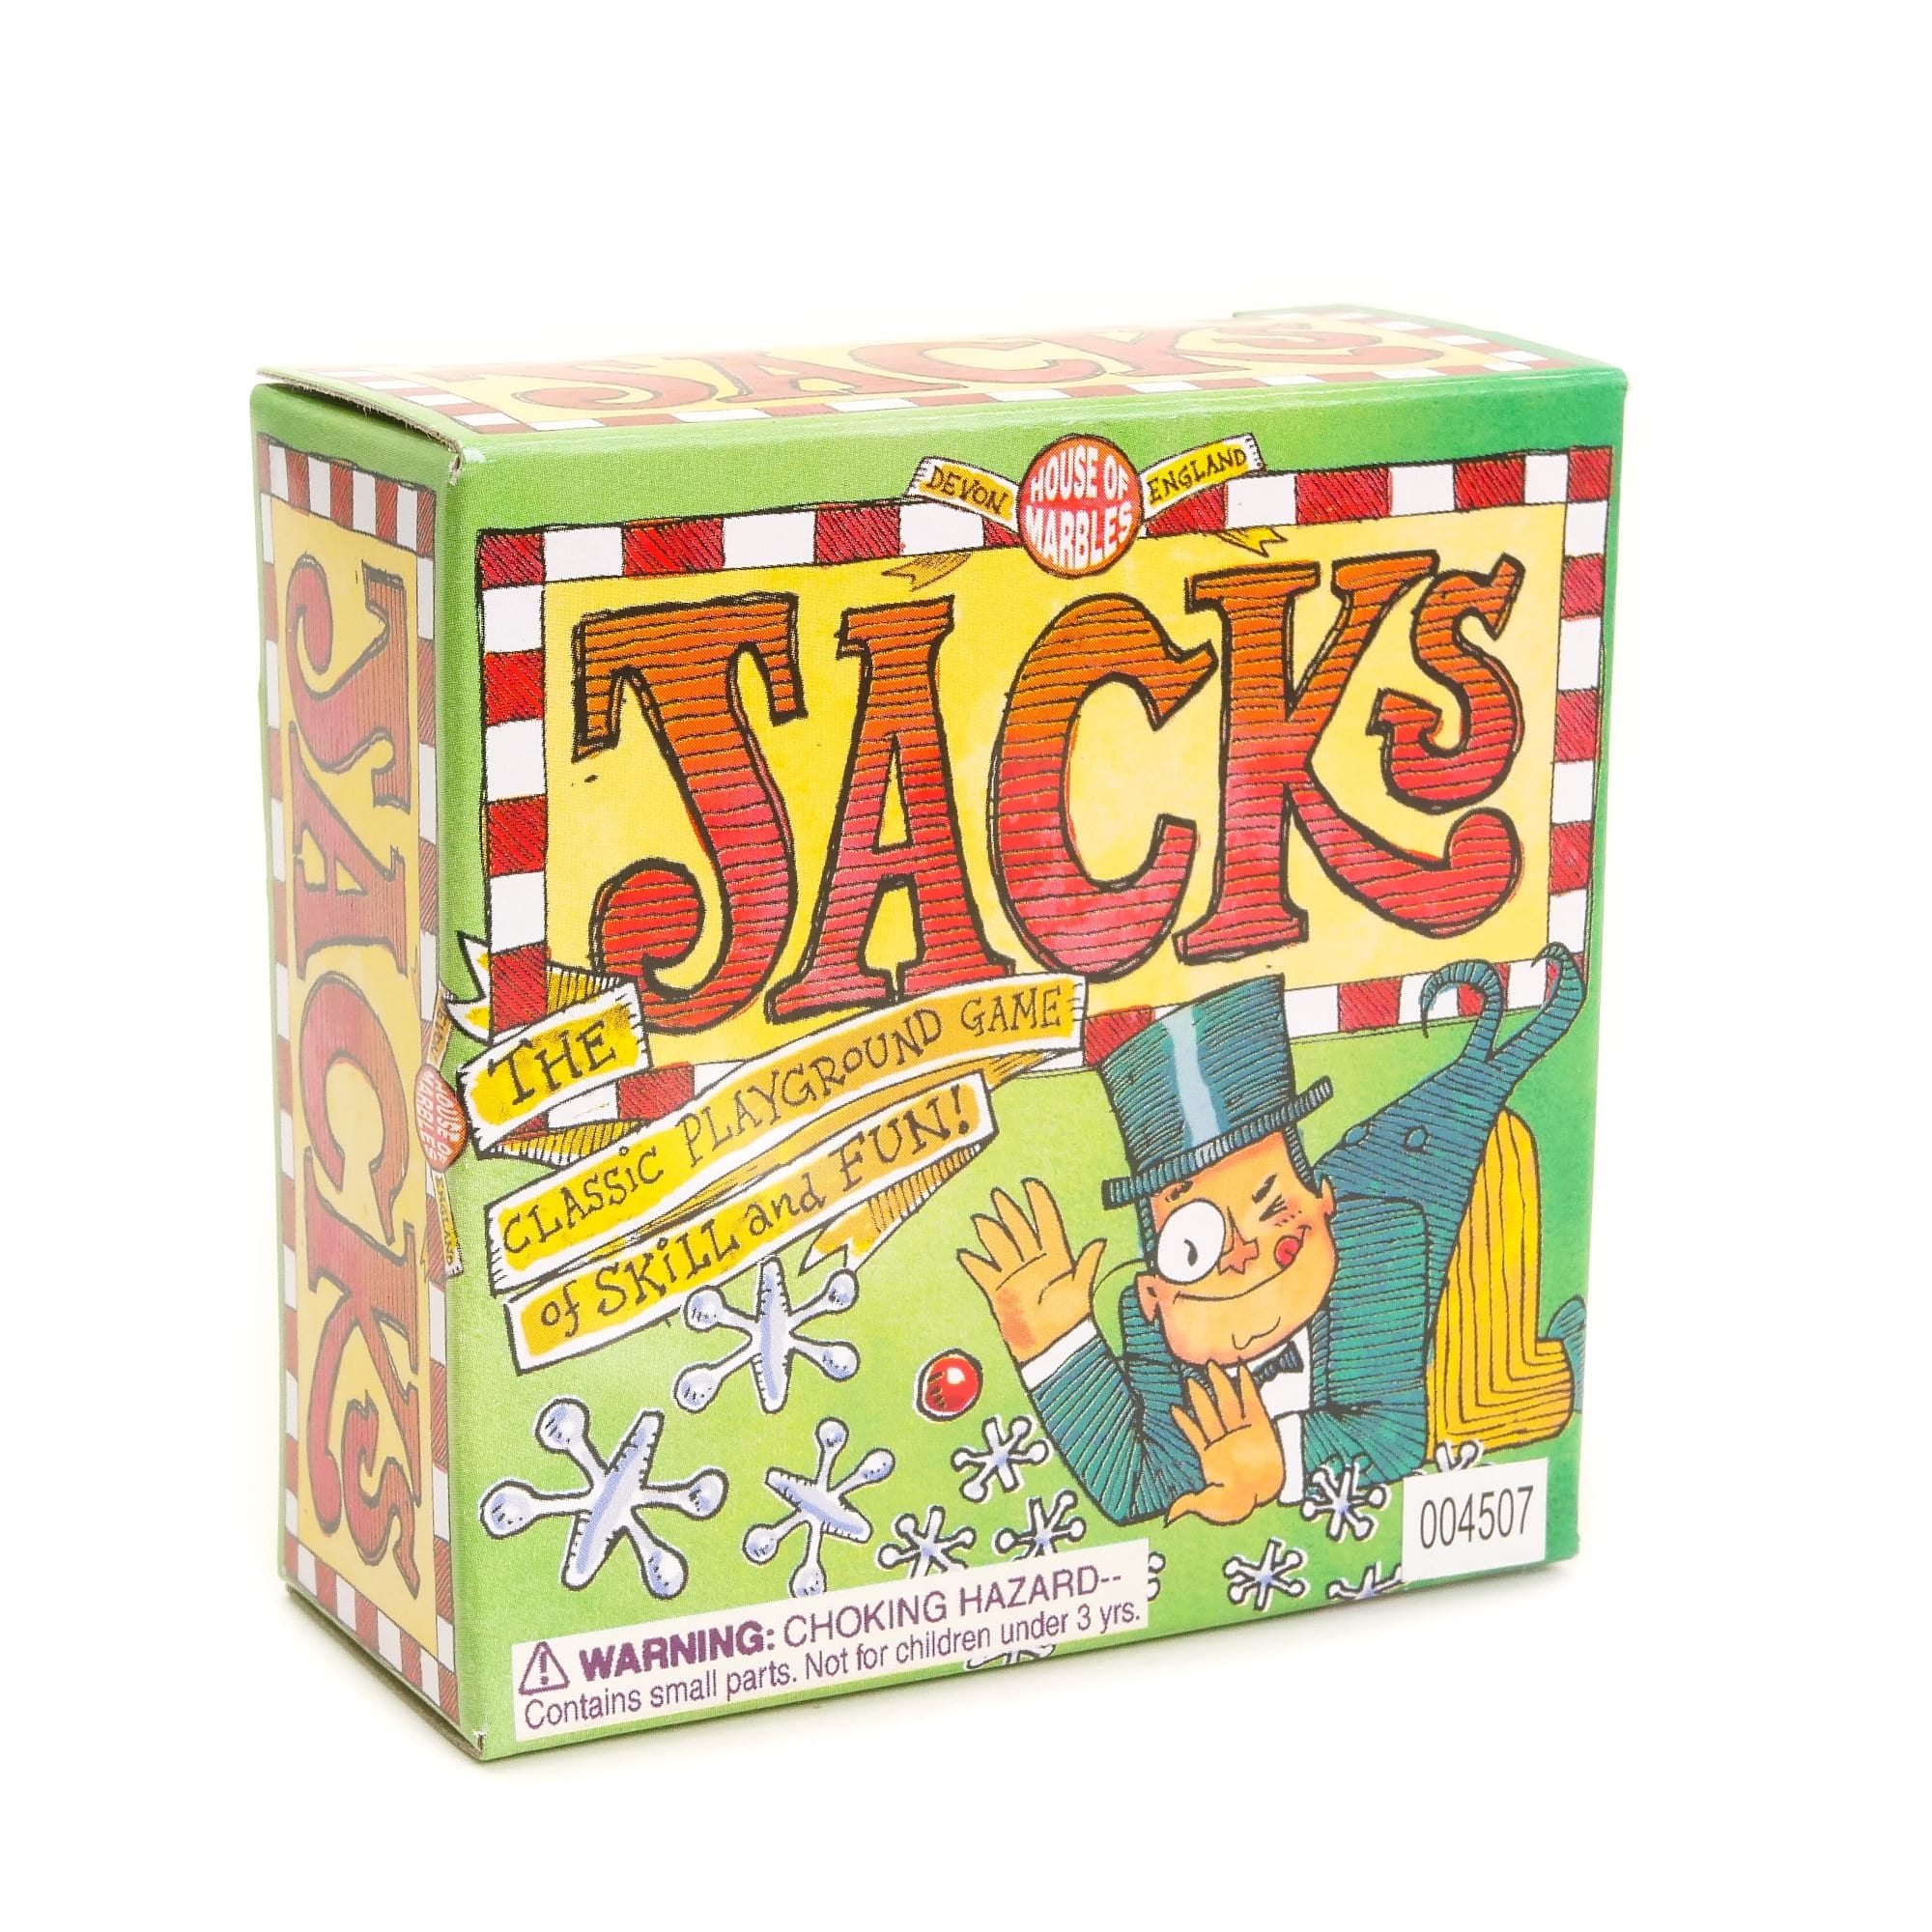 Jacks - The Classic Playground Game!